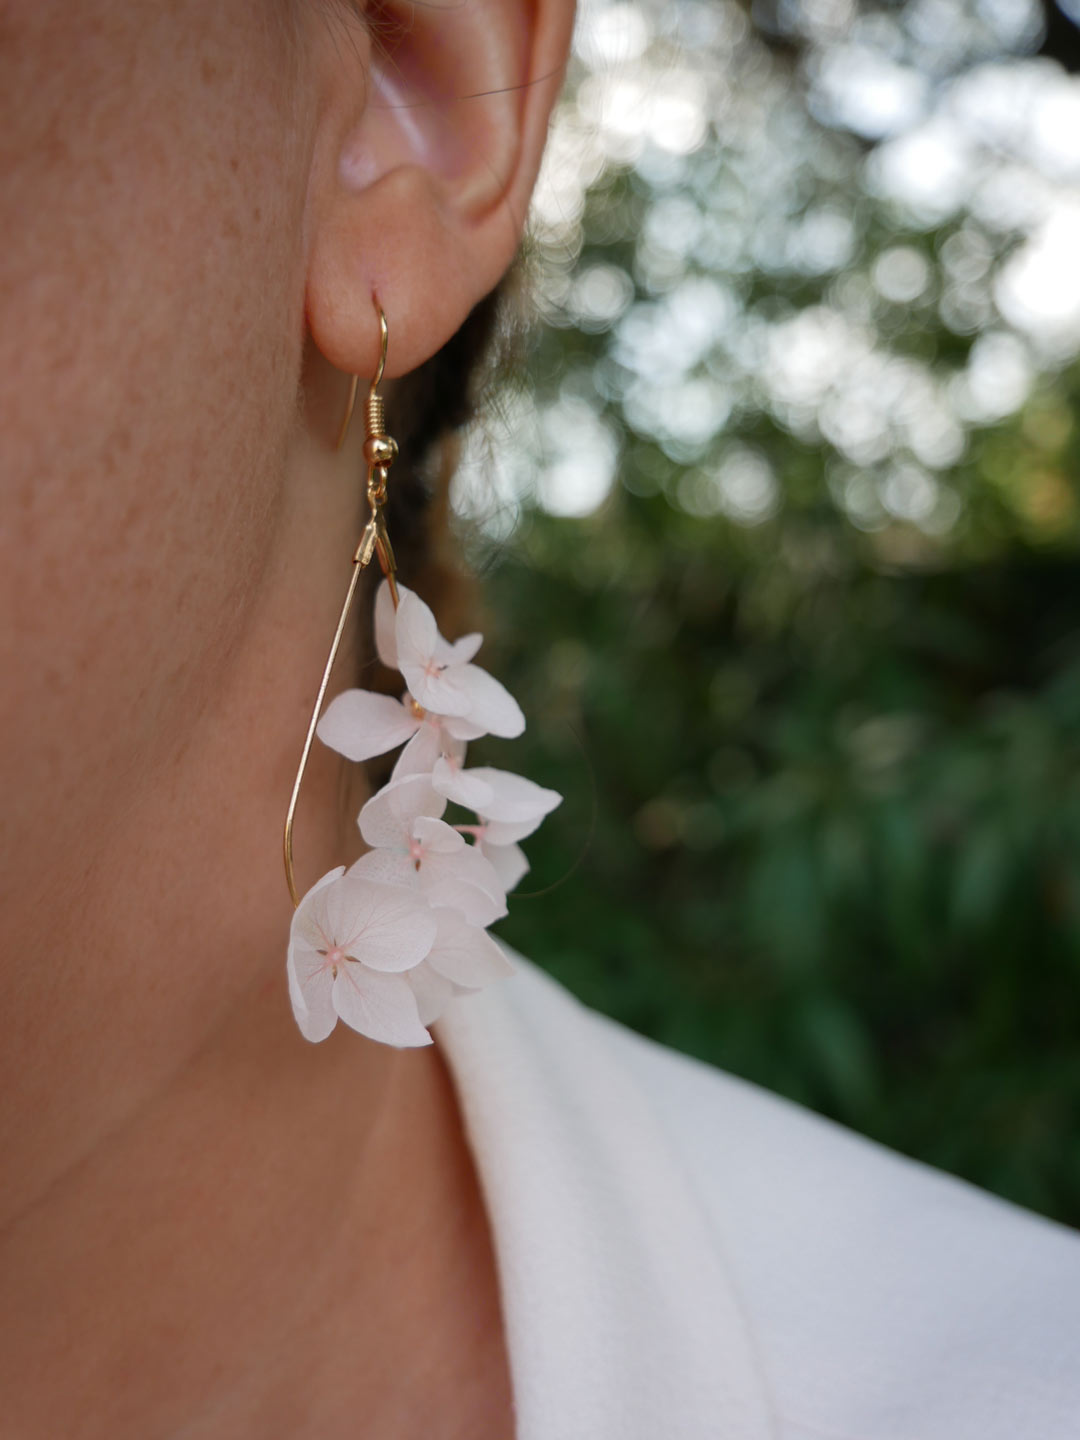 Boucle d'oreille fantaisie |bijou rose poudrée |par Tochu-De